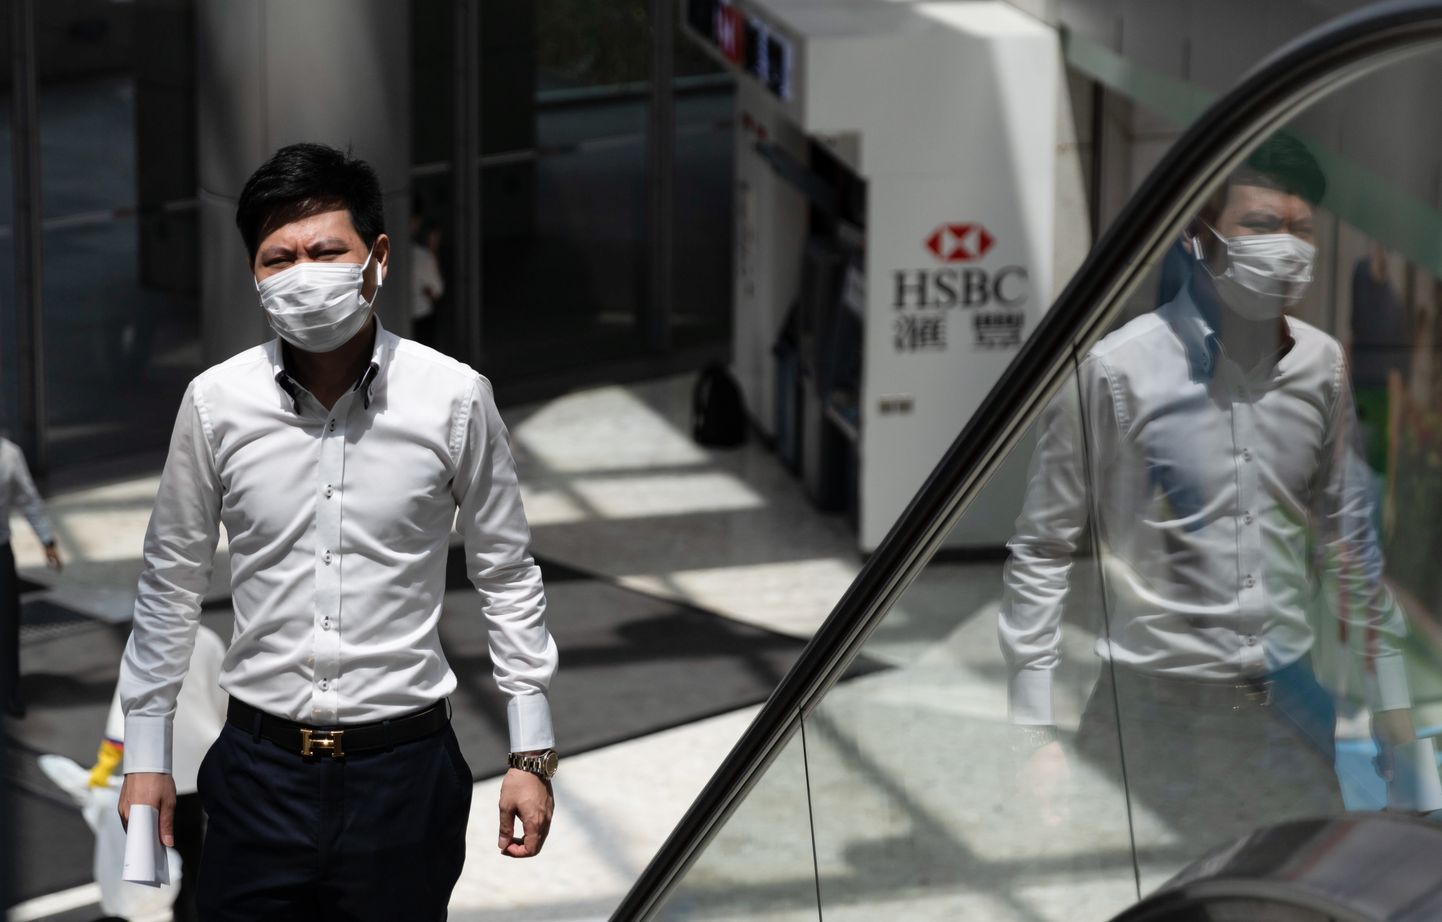 33-aastane mees, kes oli põdenud kevadel COVID-19, andis Hispaania reisilt naastes Hongkongi lennuväljal positiivse koroonaproovi. Maskiga mees Hongkongis 30. juulil 2020, kui koroonaviirusega nakatumine on tõusuteel. Pilt on illustratiivne.